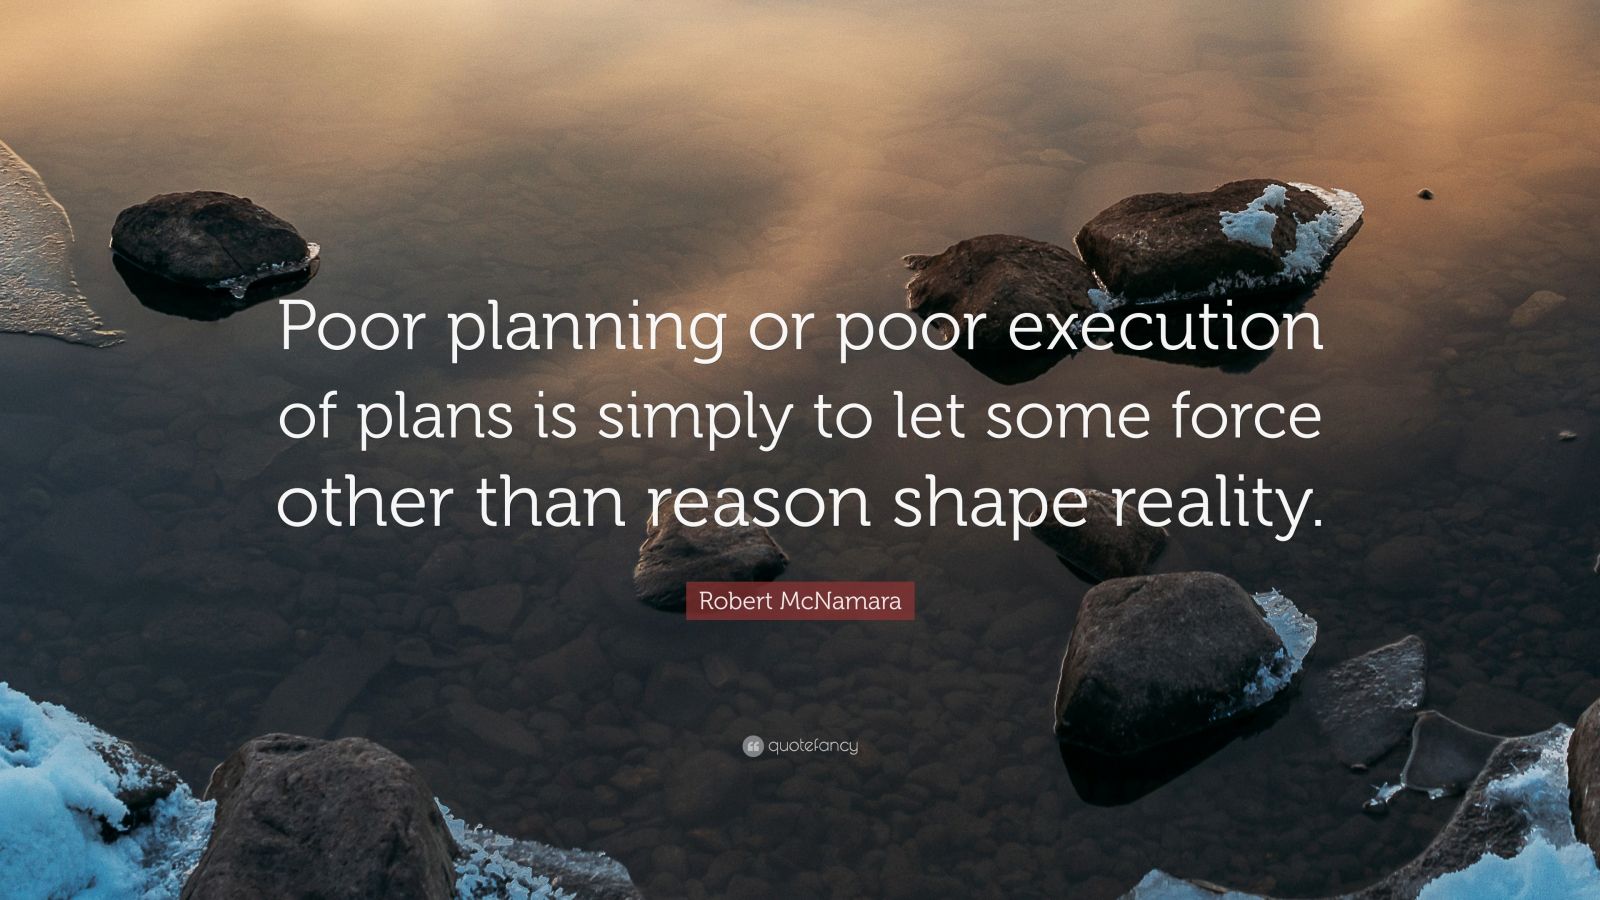 Robert McNamara Quote “Poor planning or poor execution of